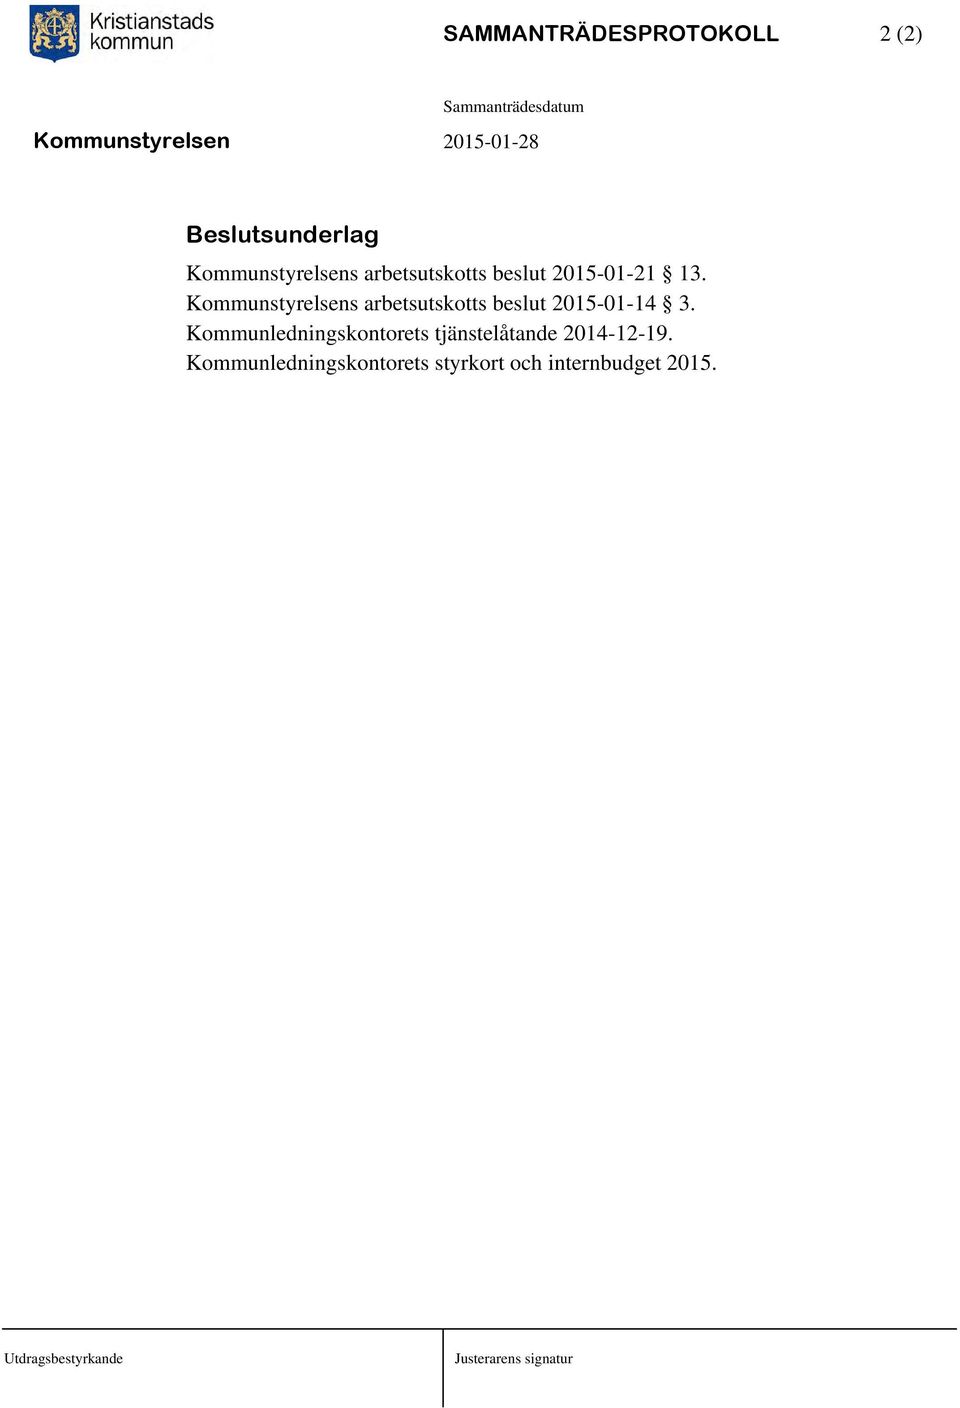 Kommunstyrelsens arbetsutskotts beslut 2015-01-14 3.